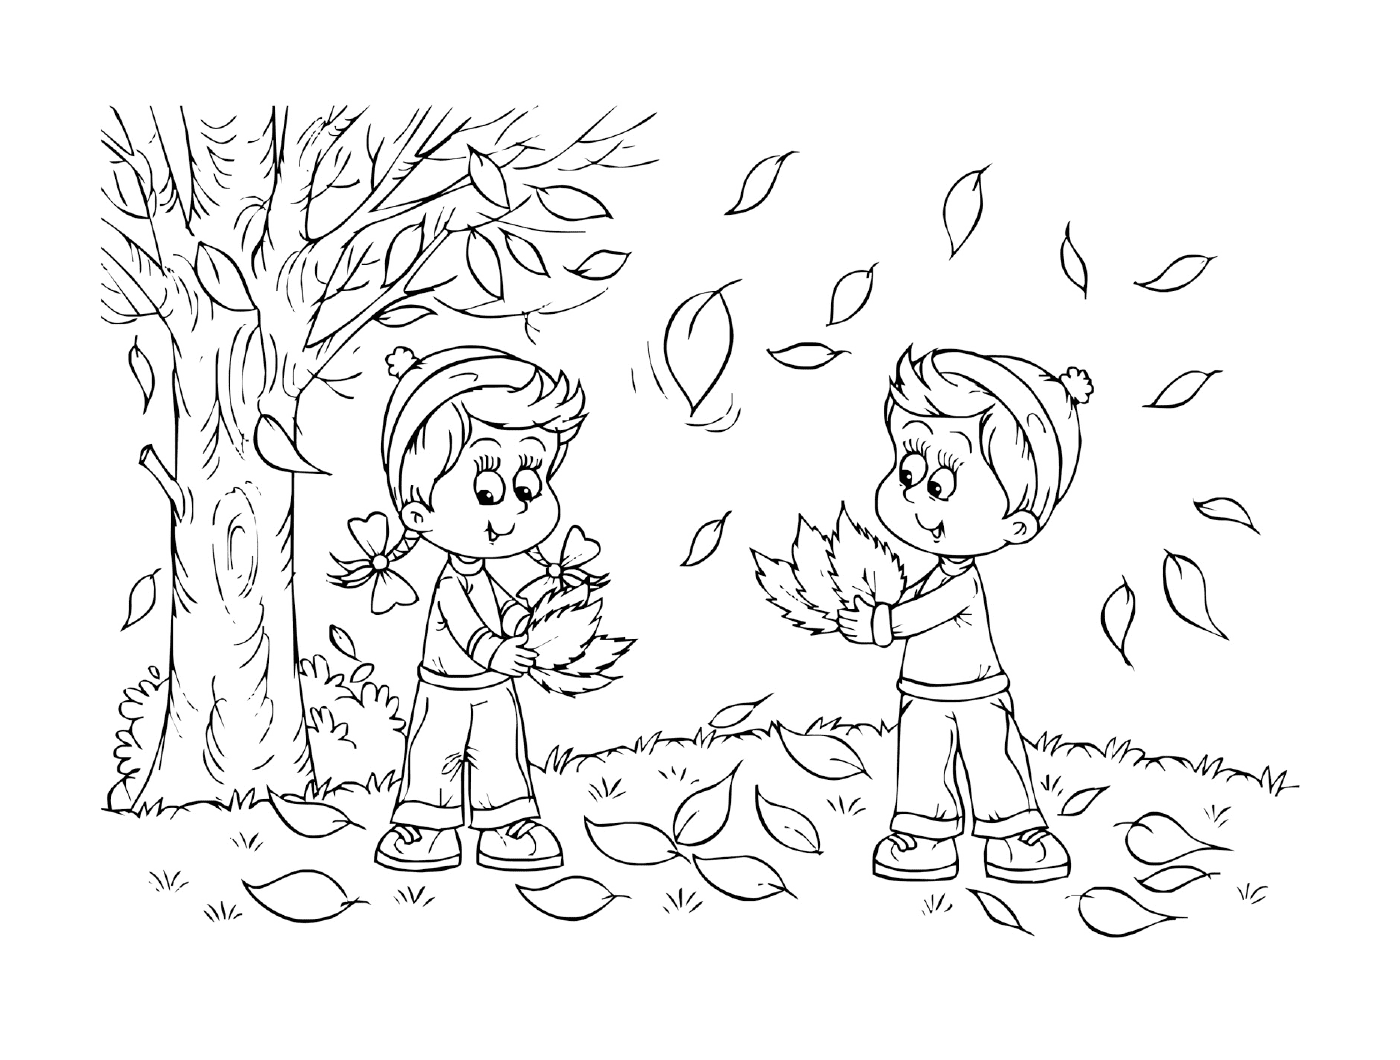  Duas crianças brincando com folhas em um parque 